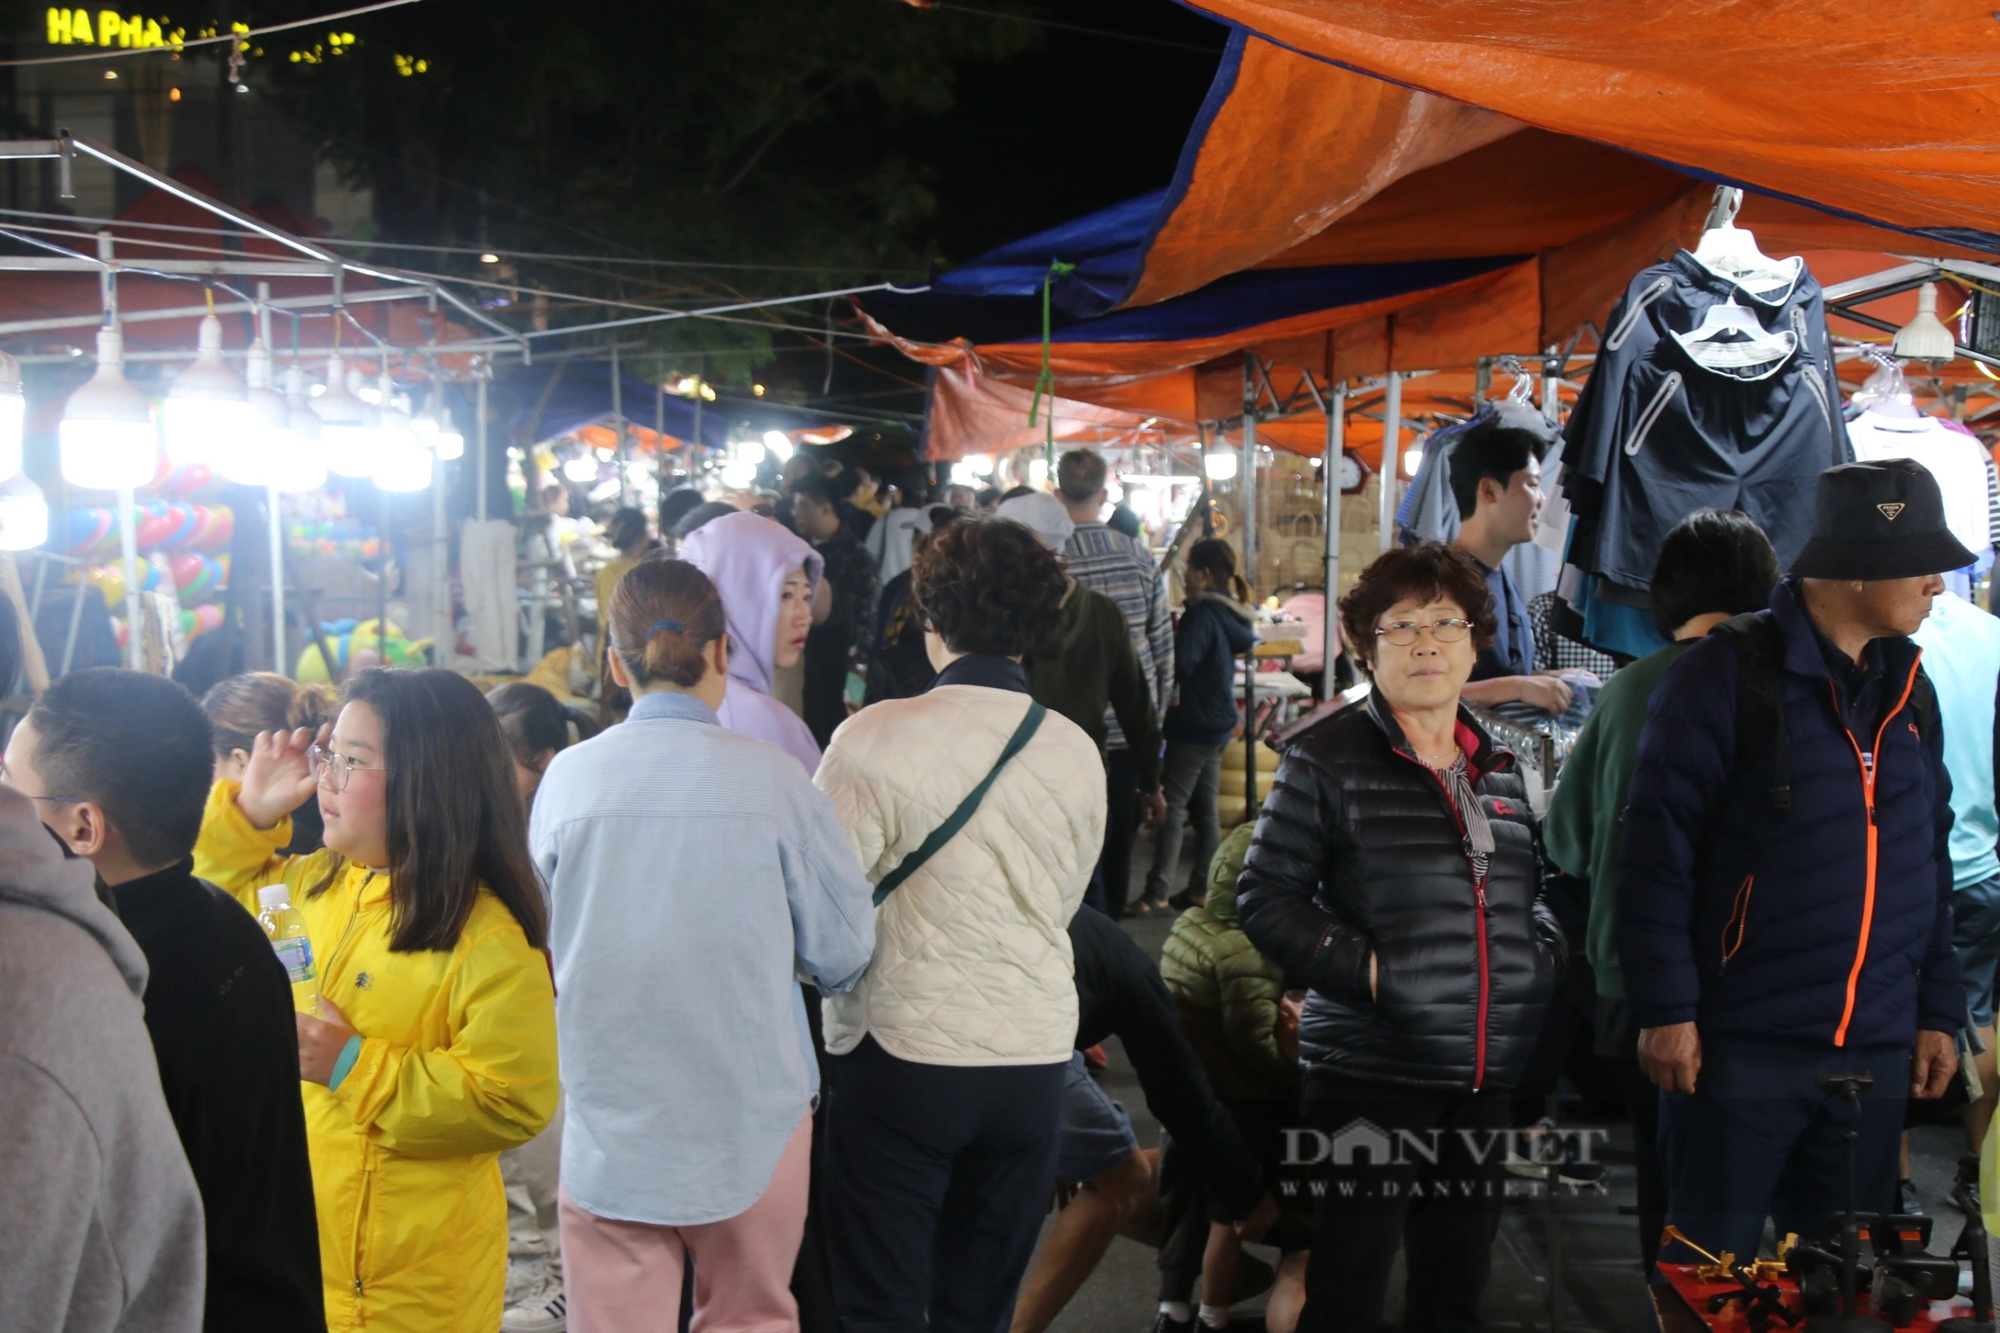 Hàng ngàn người dân, du khách đổ về các điểm vui chơi đêm tại Đà Nẵng - Ảnh 8.